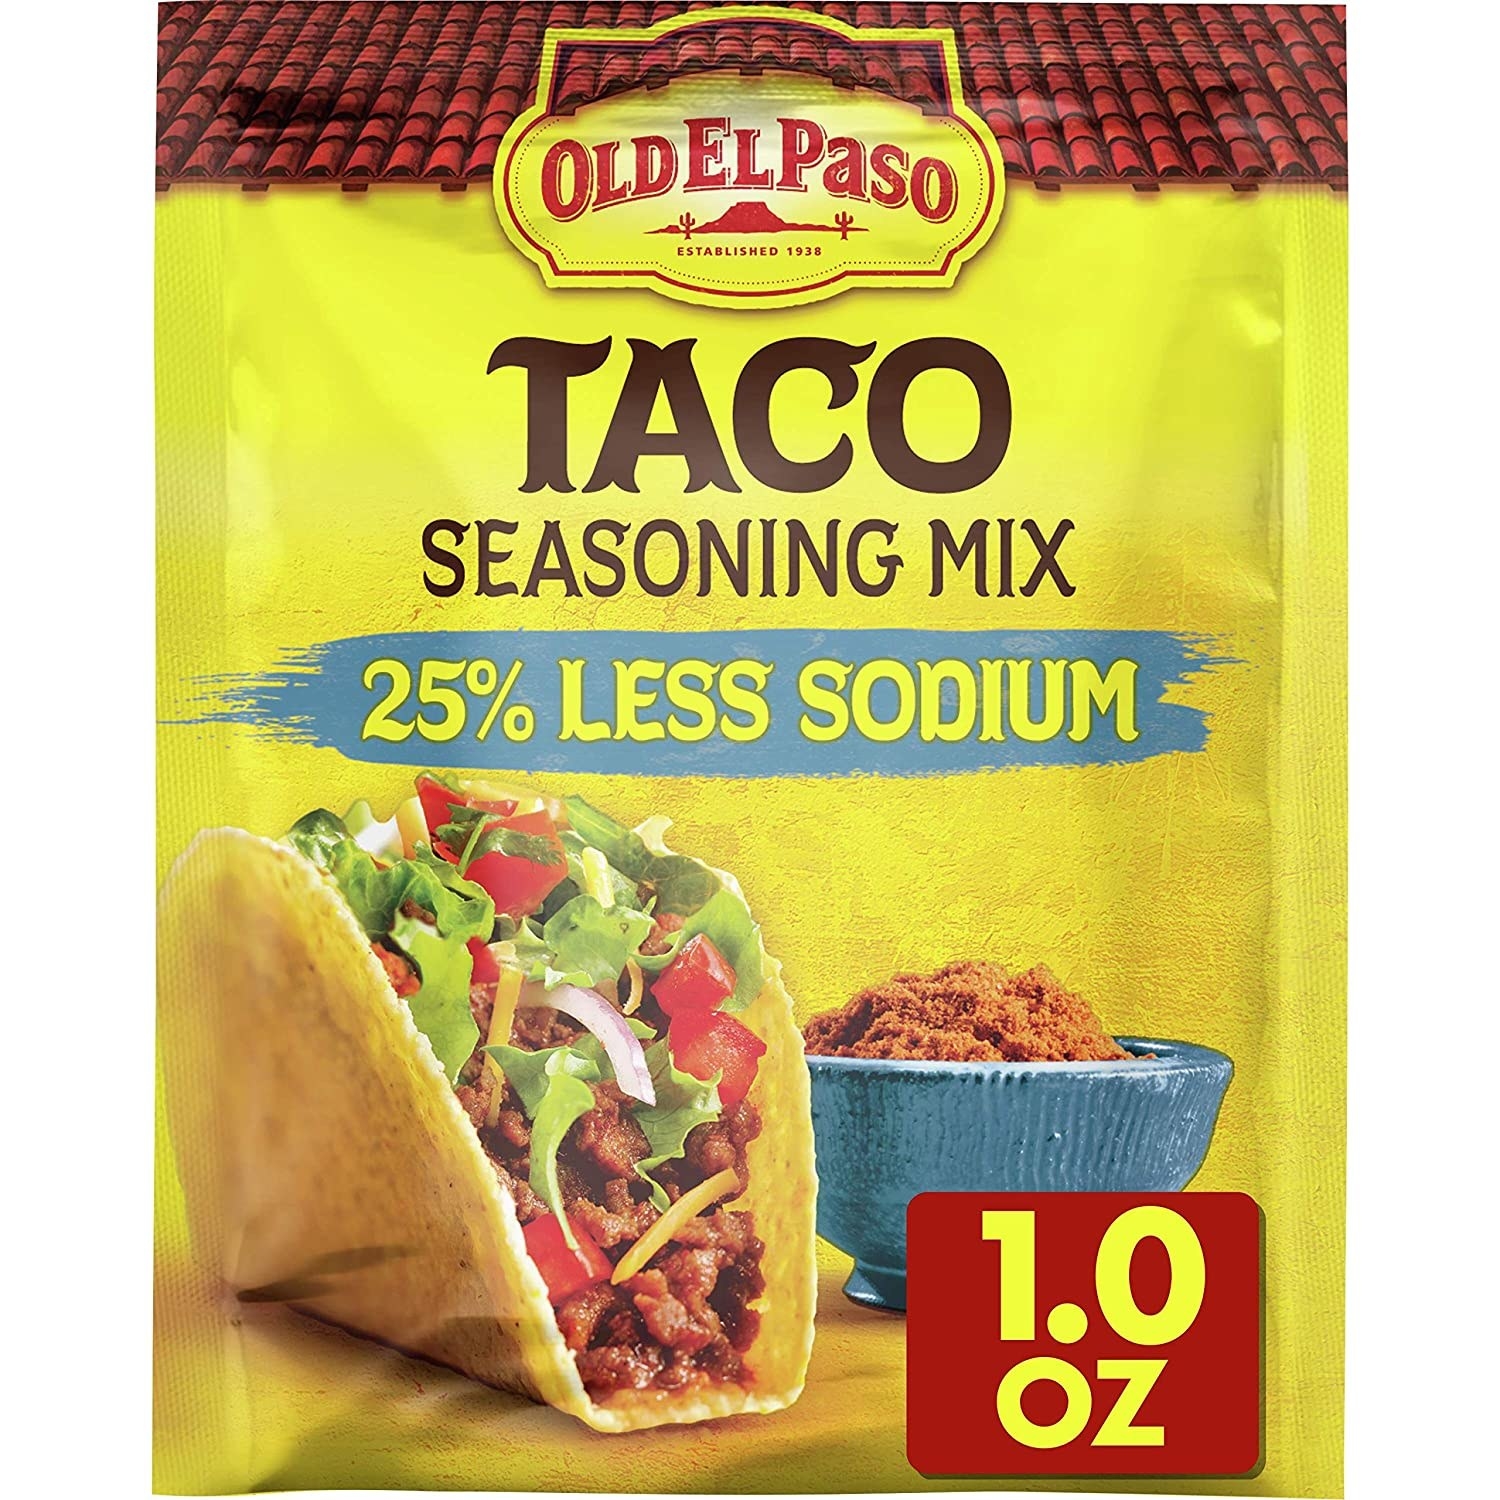 Old El Paso taco seasoning mix.